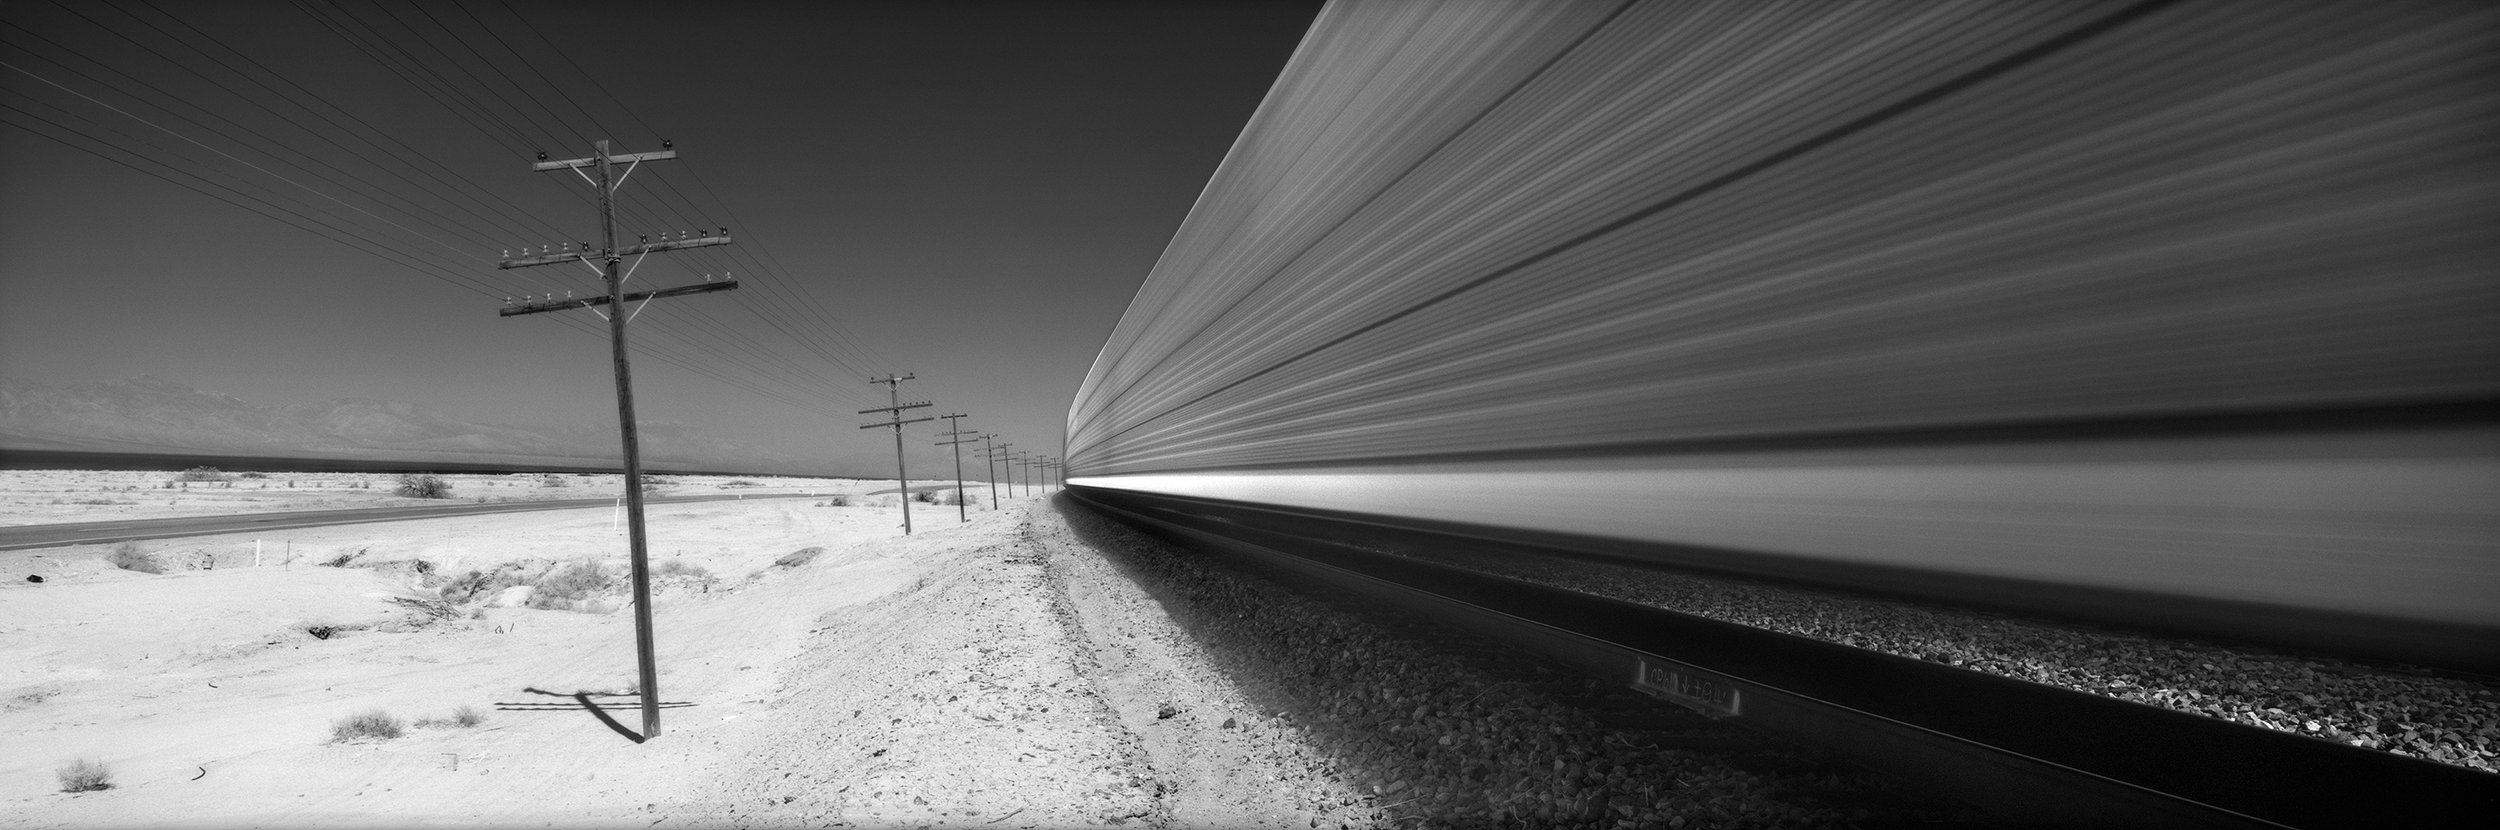  Salton Sea Train. April 25, 2007 